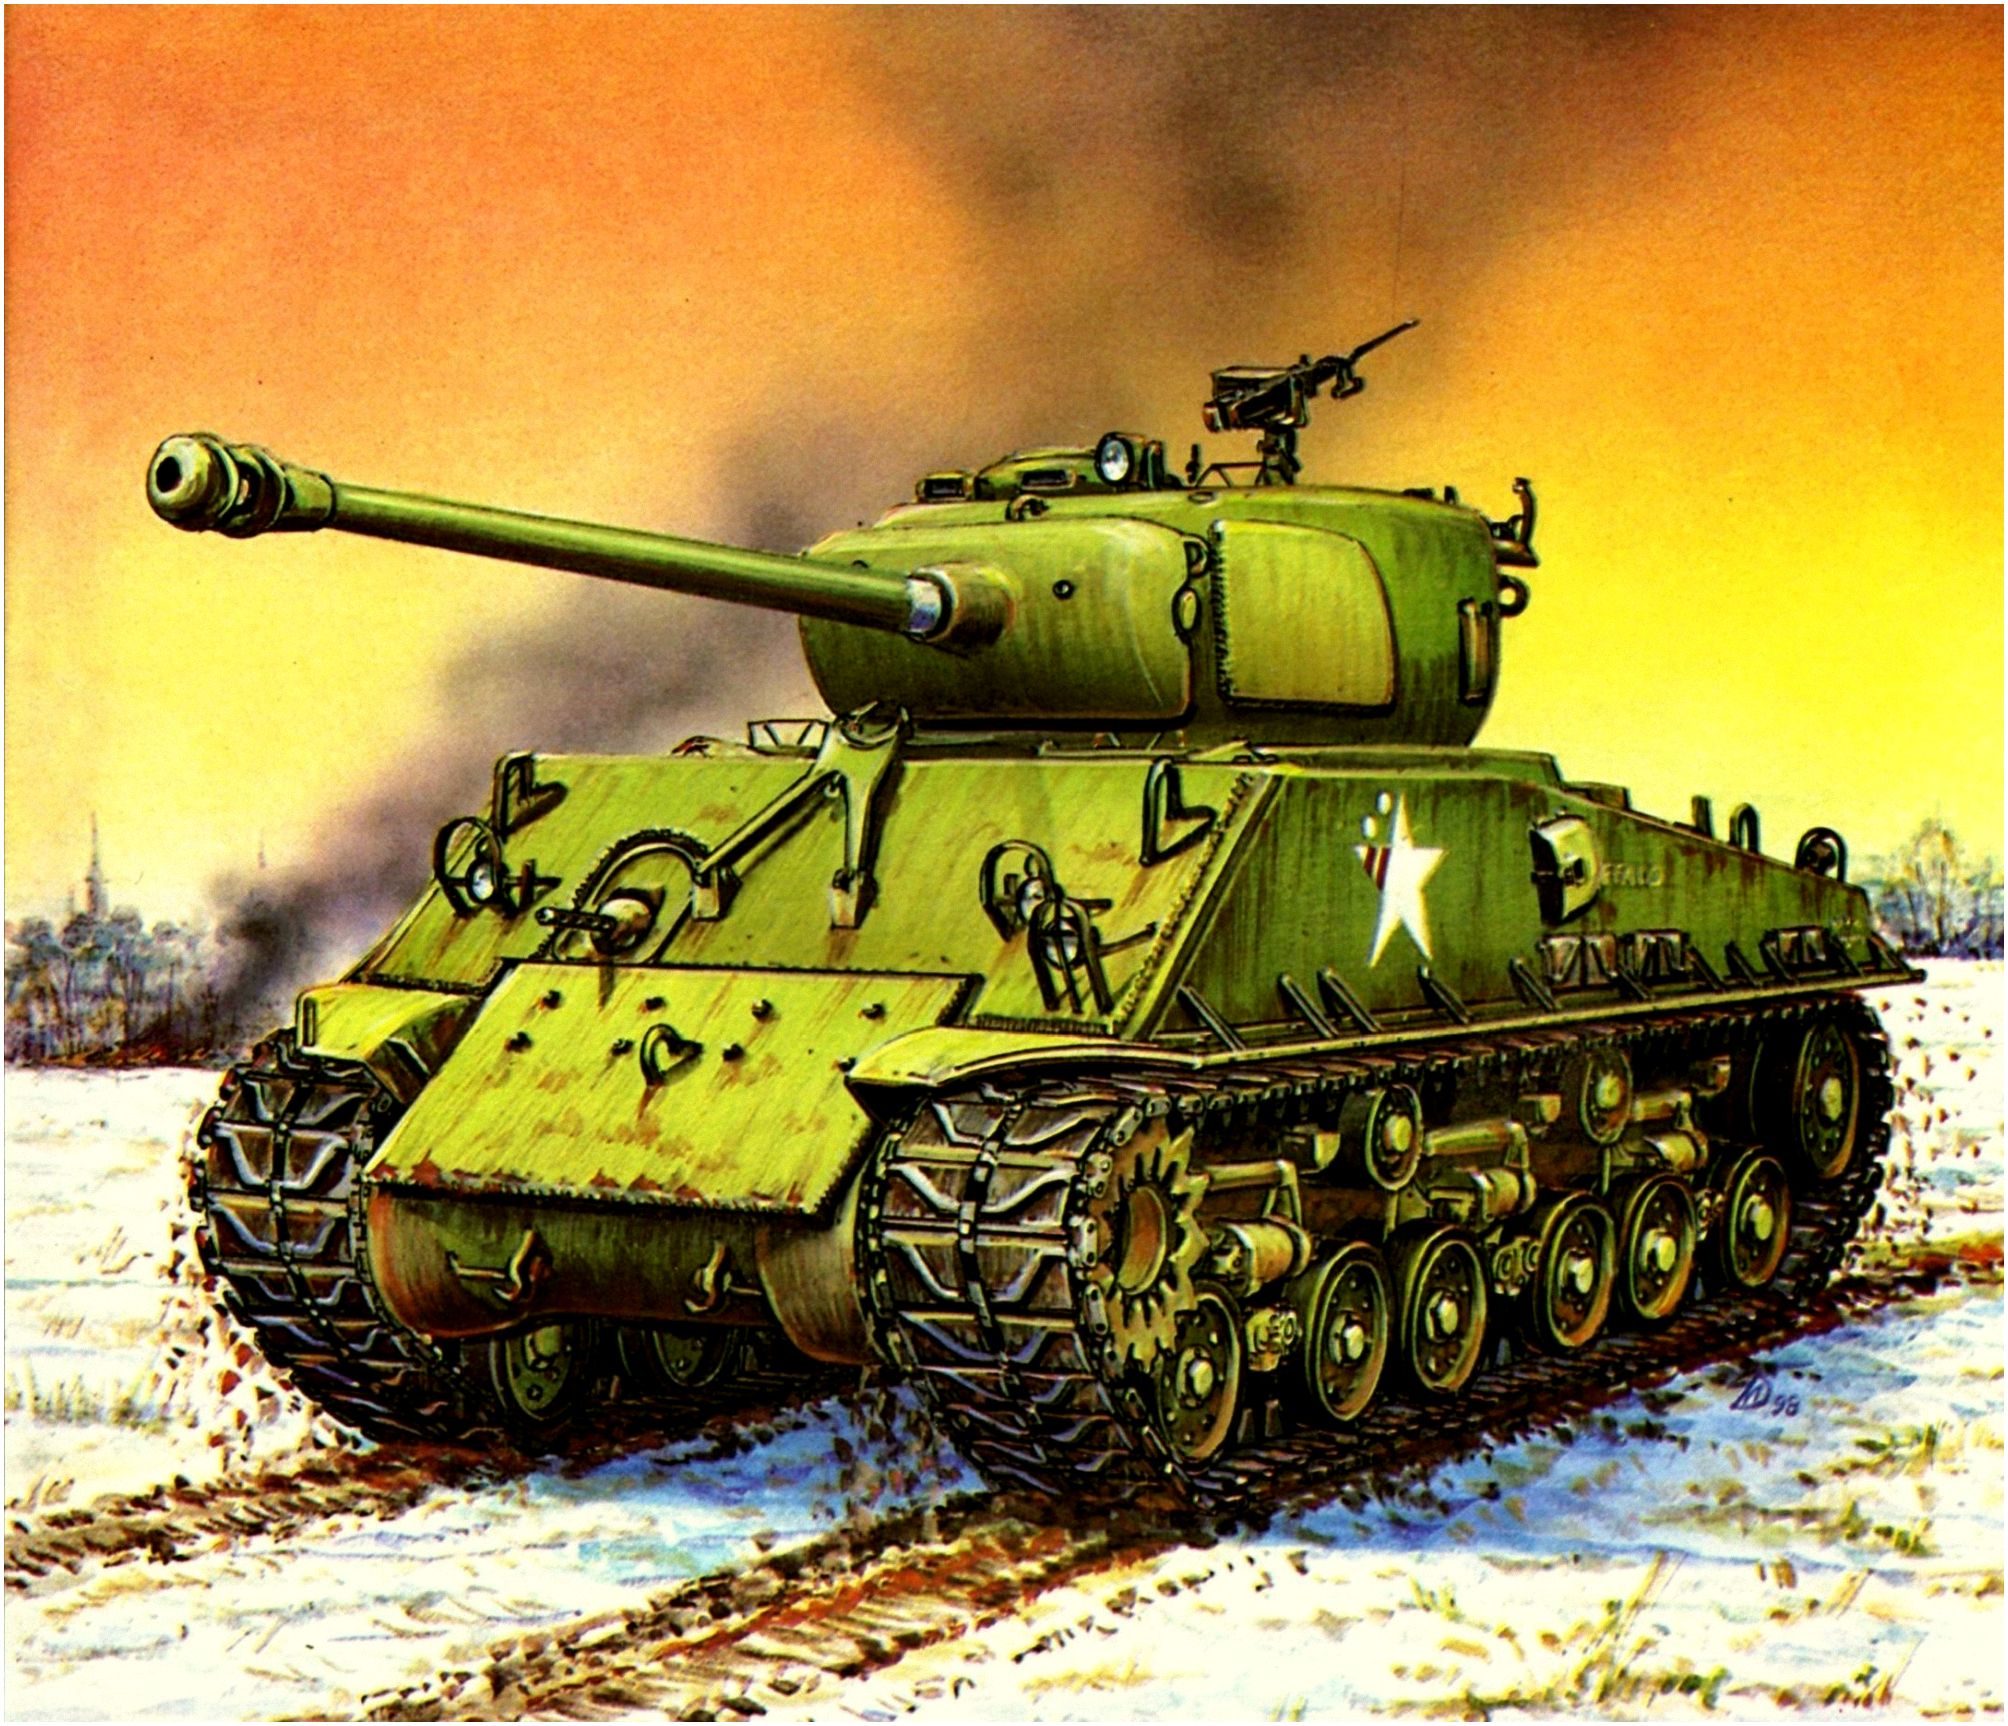 Дмитриев Михаил. Танк M-4A3E8 Sherman.